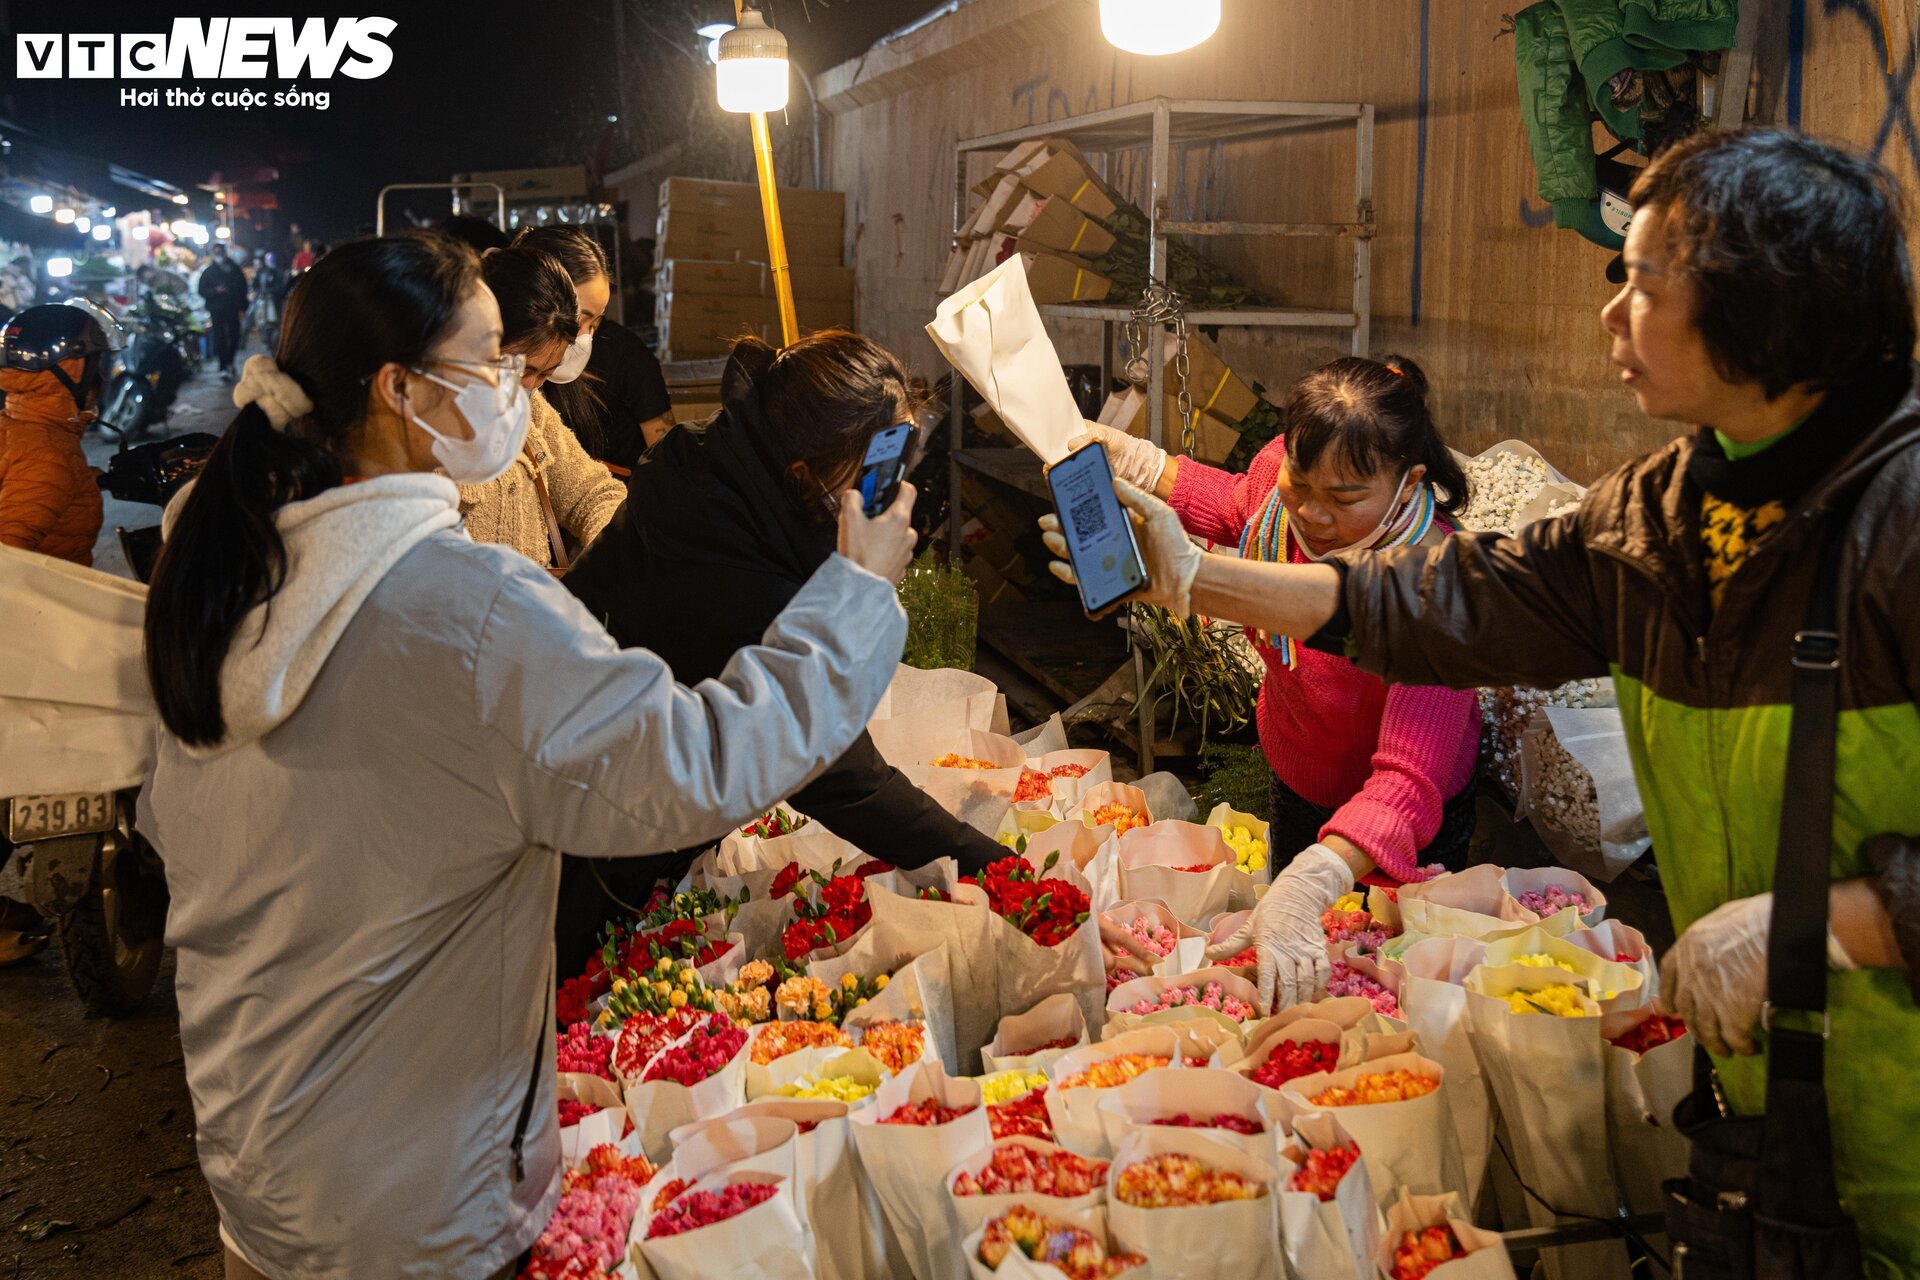 Chợ hoa tươi lớn nhất Hà Nội nhộn nhịp suốt đêm trước ngày 8/3 - Ảnh 14.